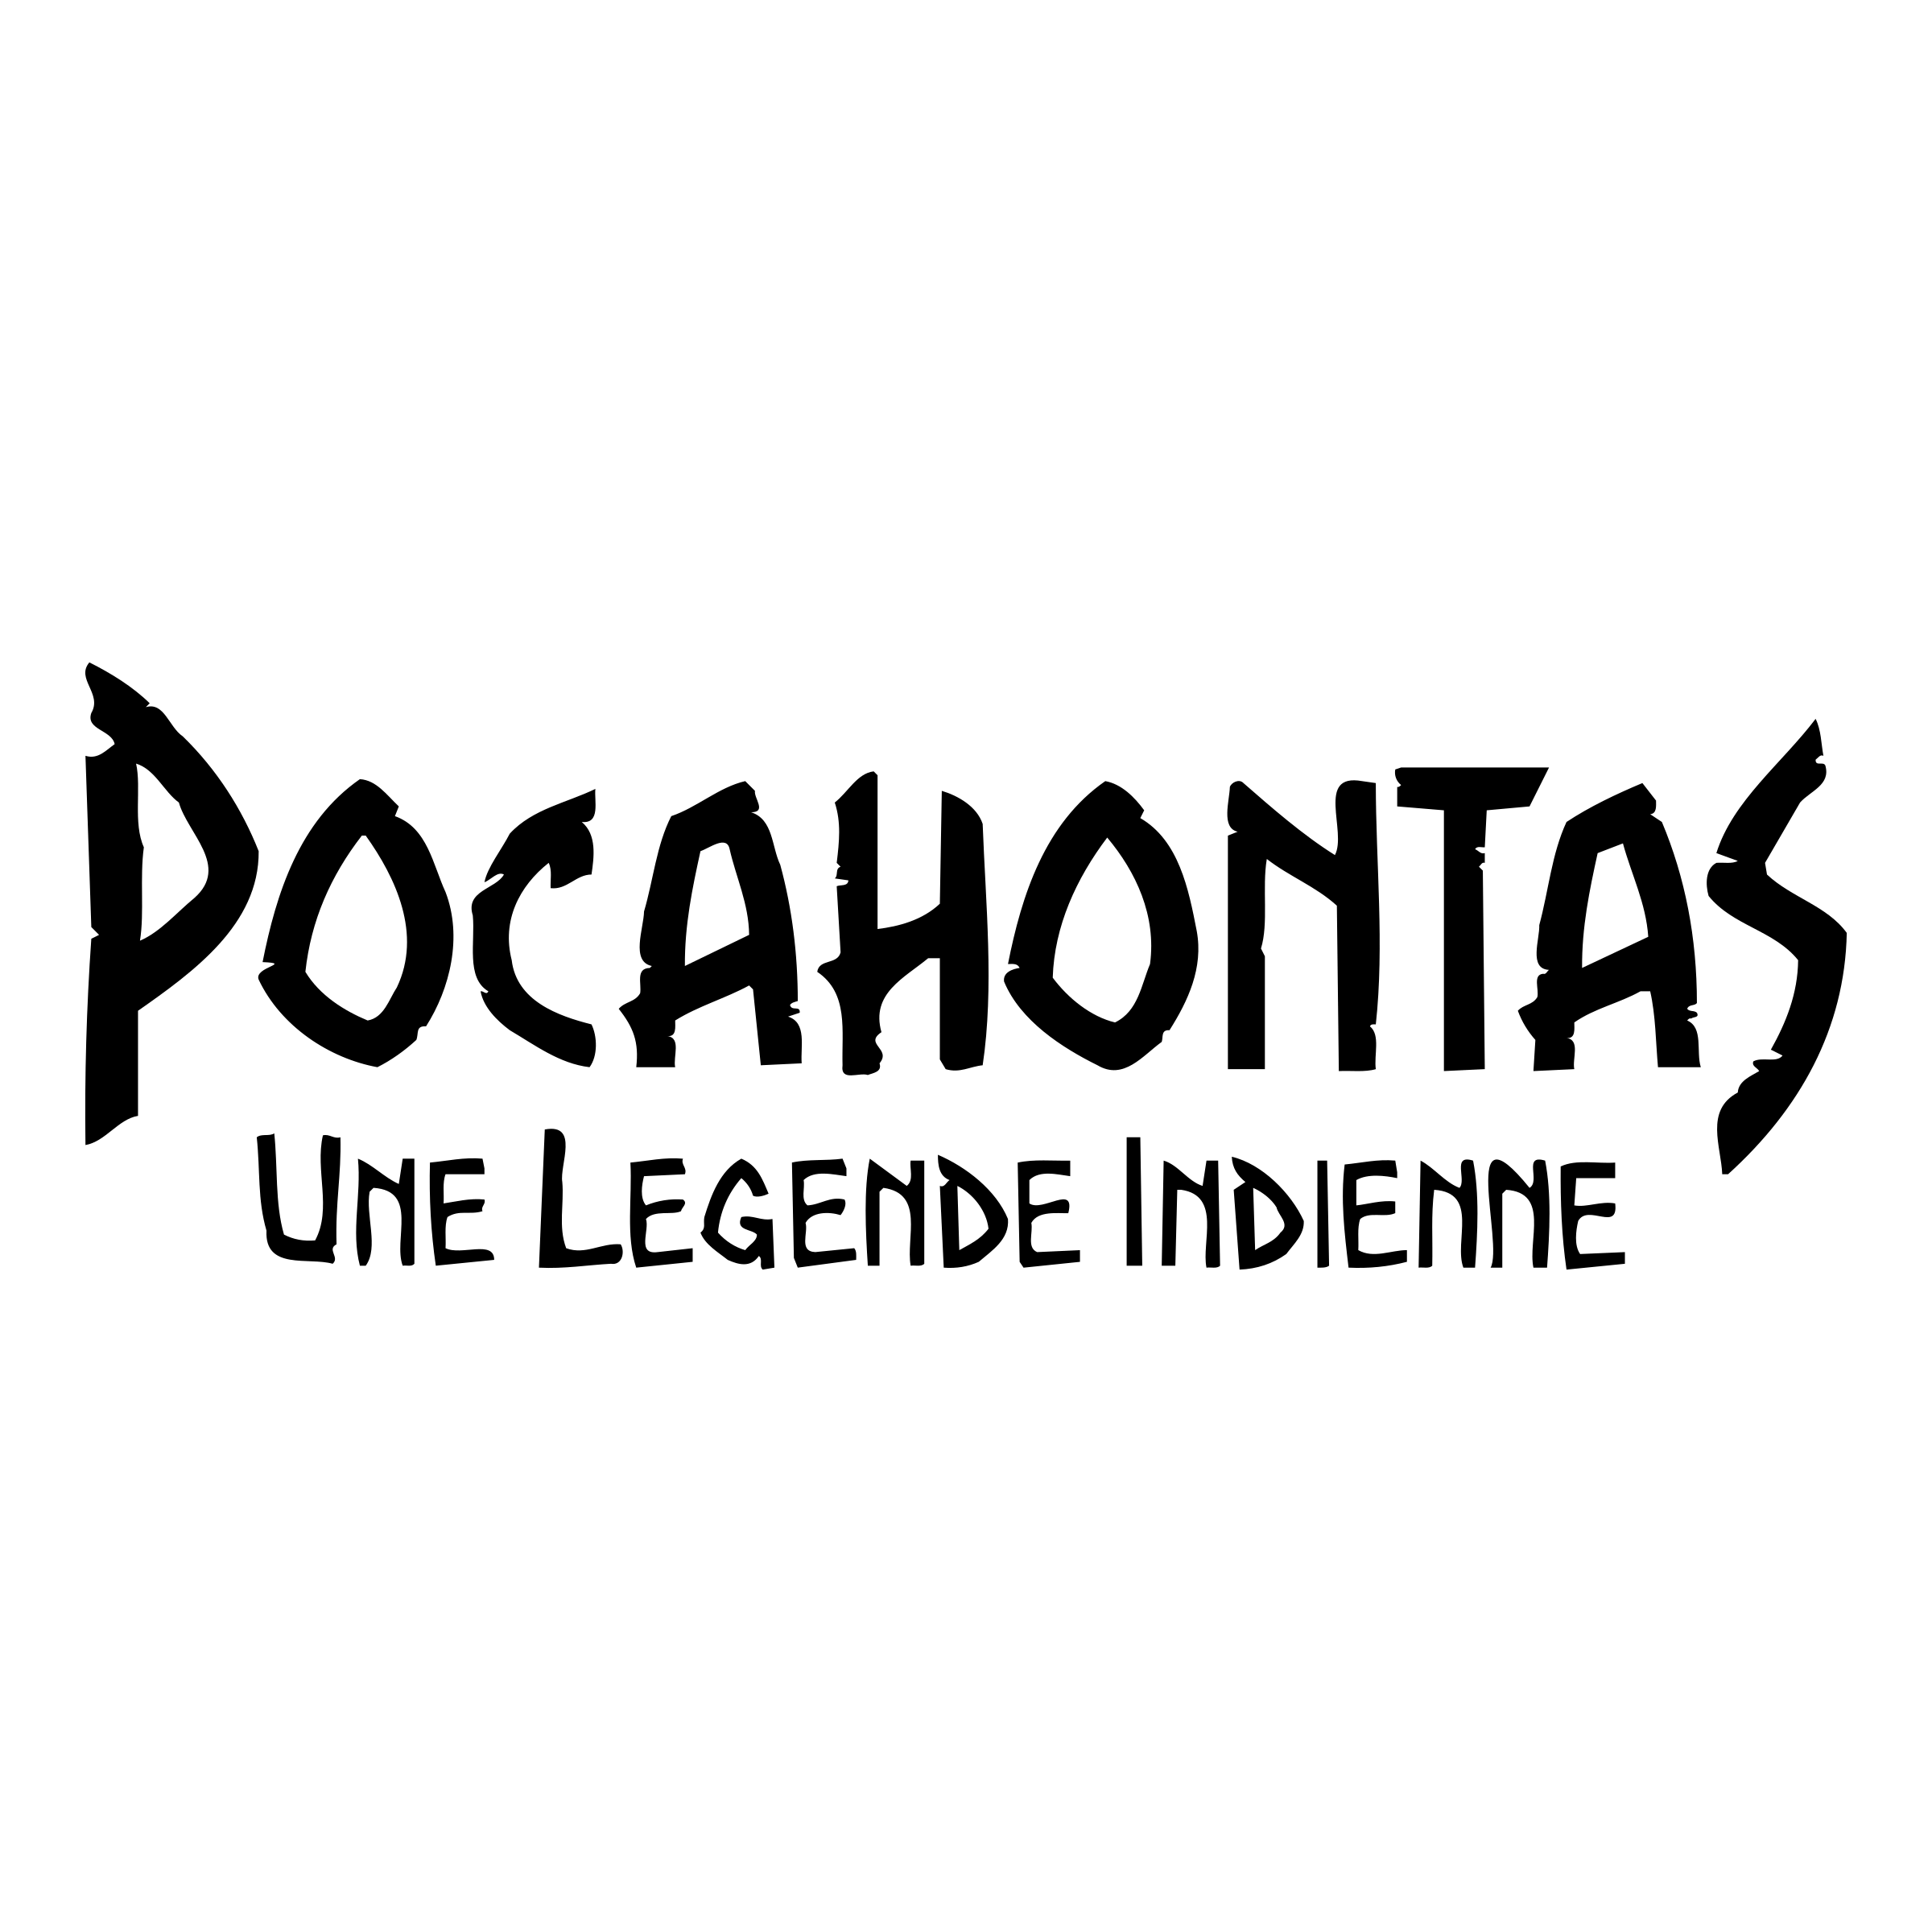 Pocahontas Logo - Pocahontas Logo PNG Transparent & SVG Vector